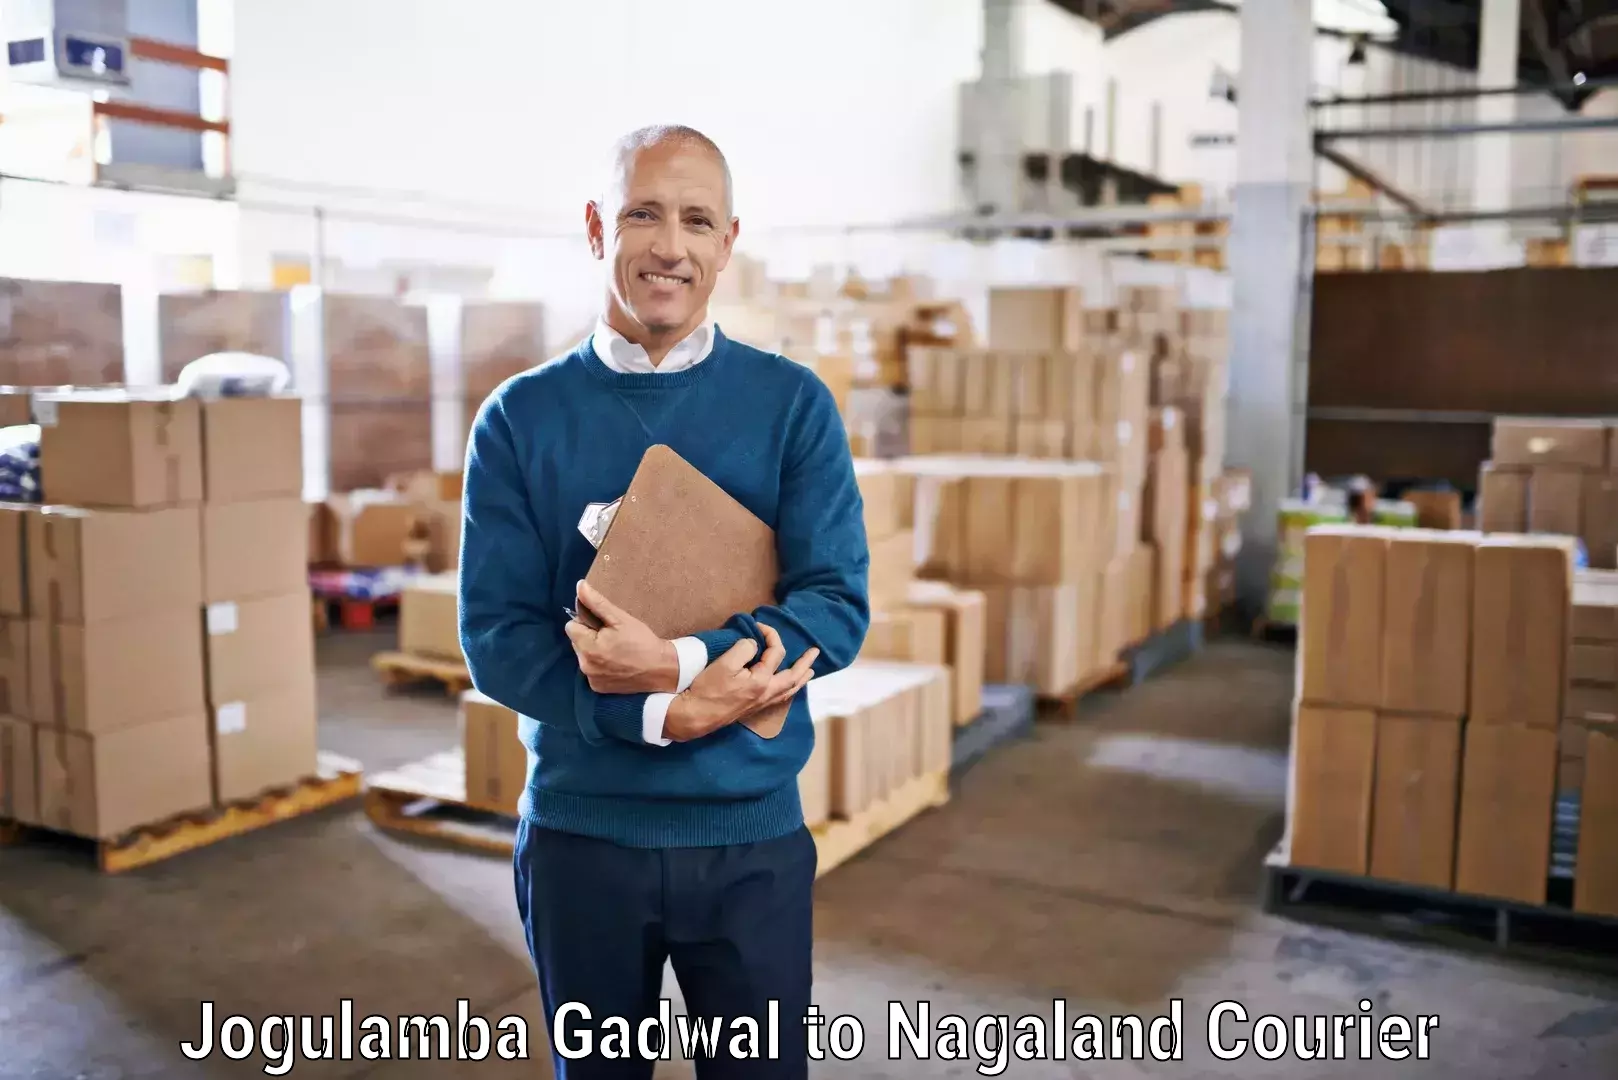 Courier service comparison Jogulamba Gadwal to Longleng